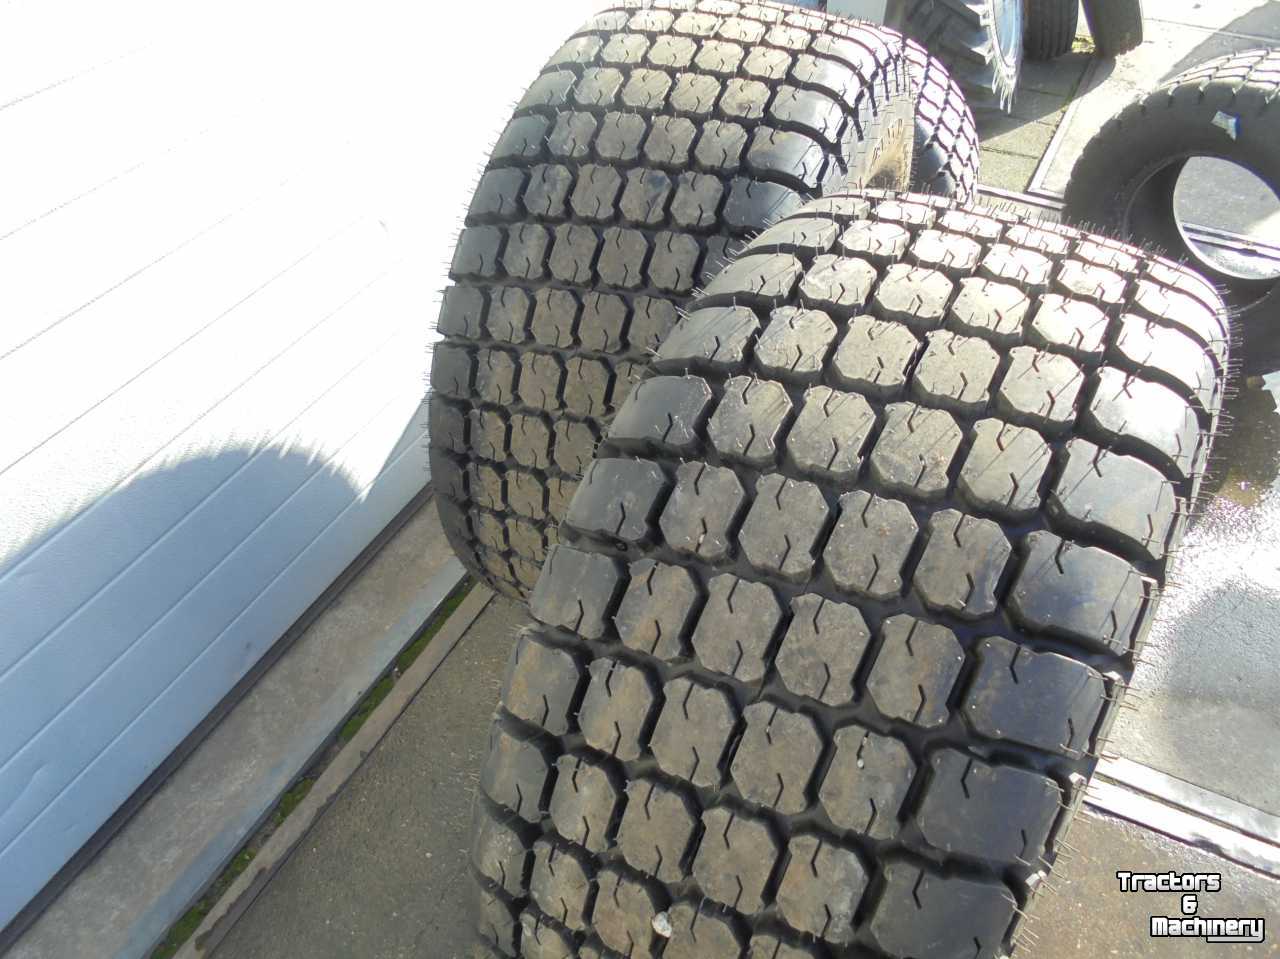 Wheels, Tyres, Rims & Dual spacers Galaxy 44x18.00-20 NHS 4 ply Mighty Mow gazonbanden R-3